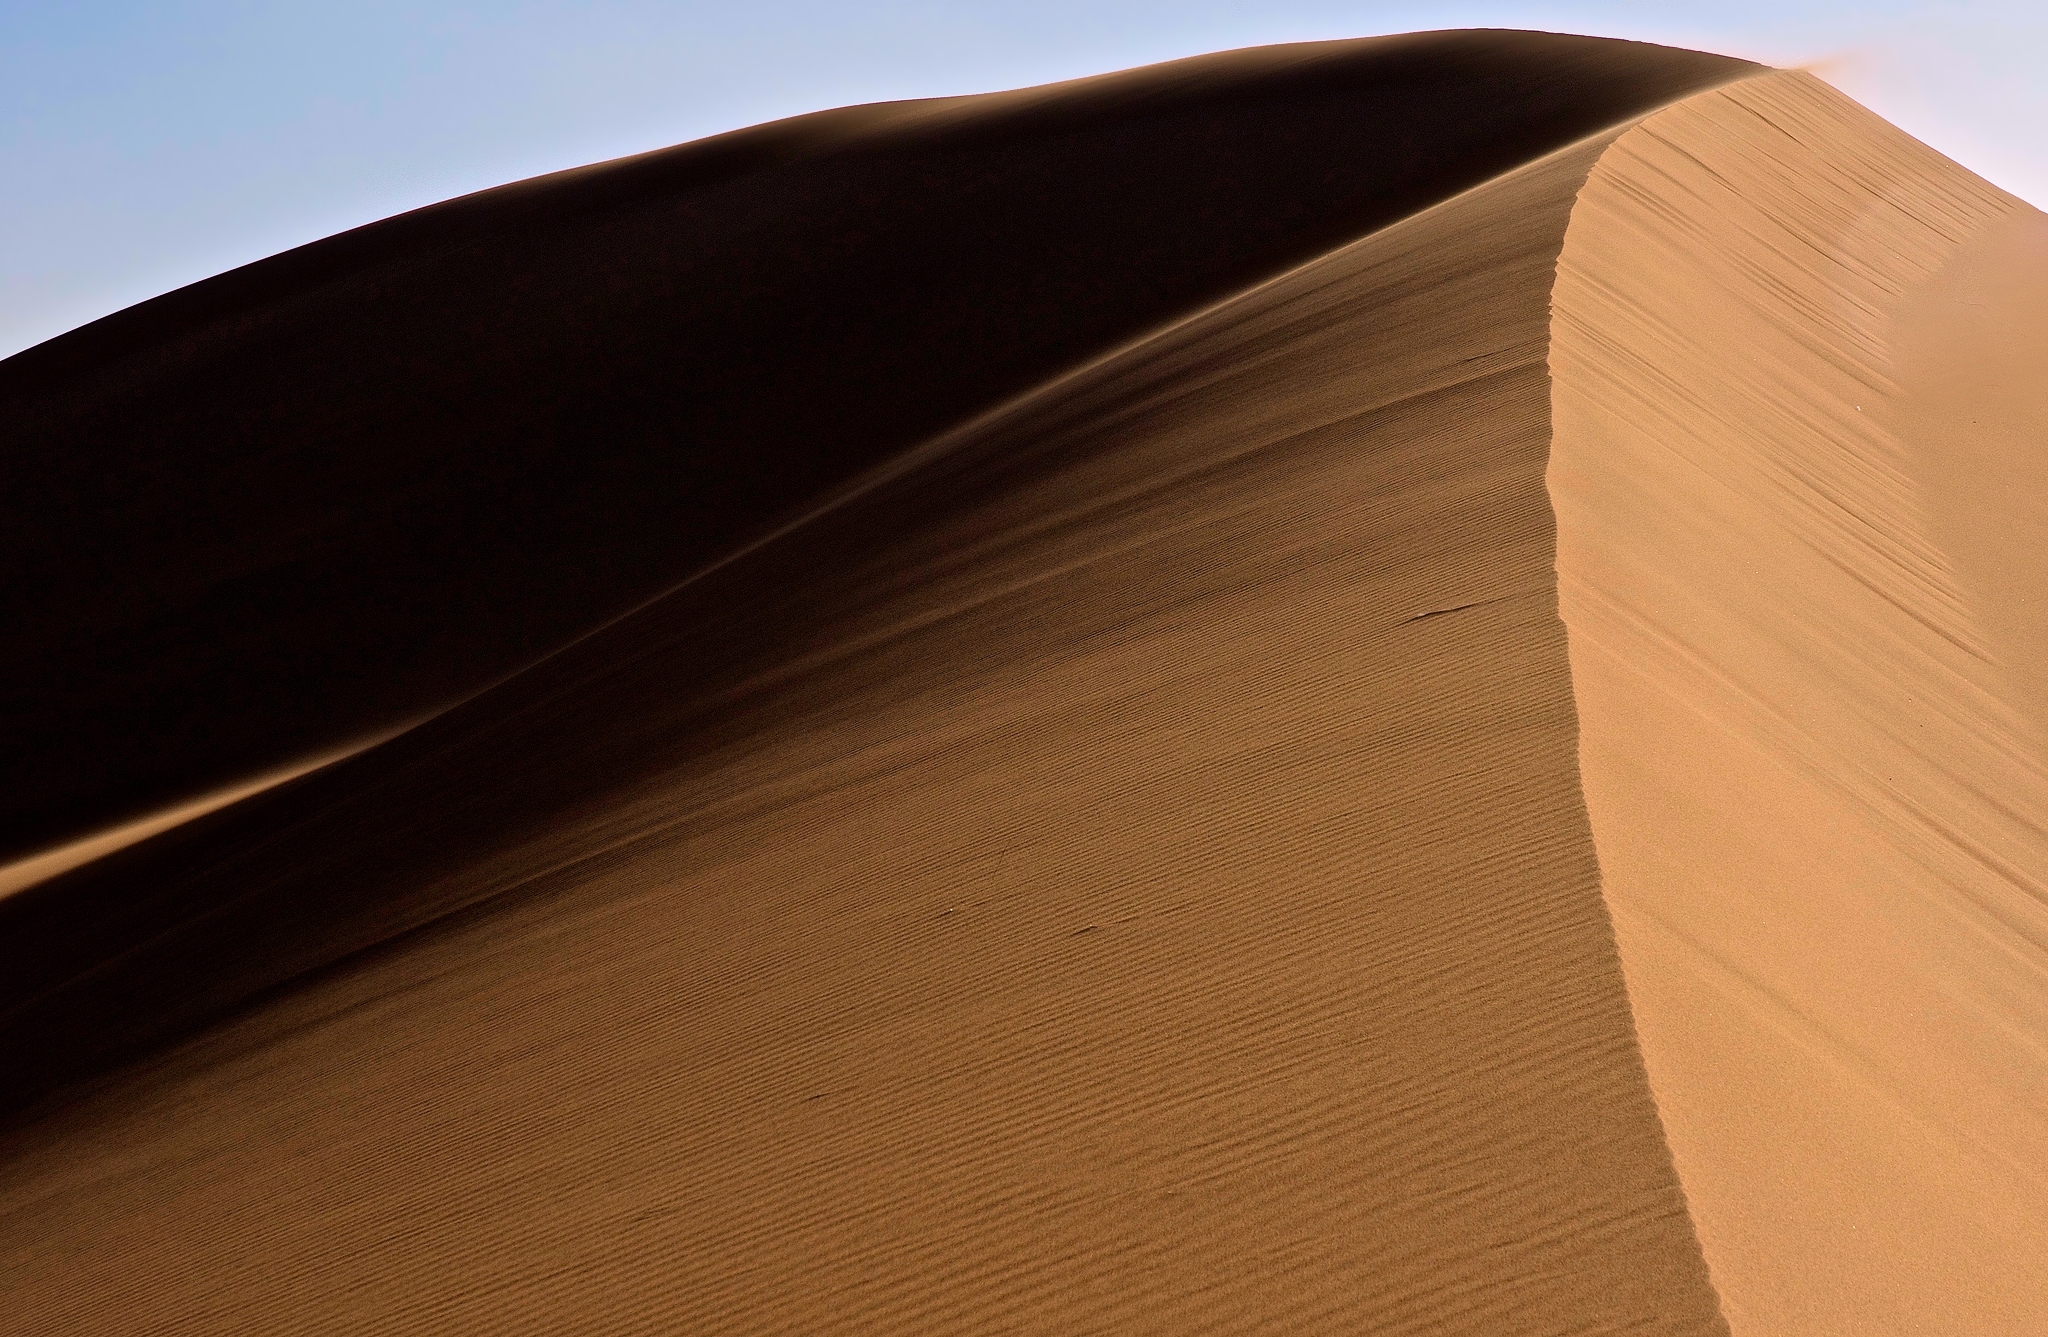 Earth Desert HD Wallpaper | Background Image